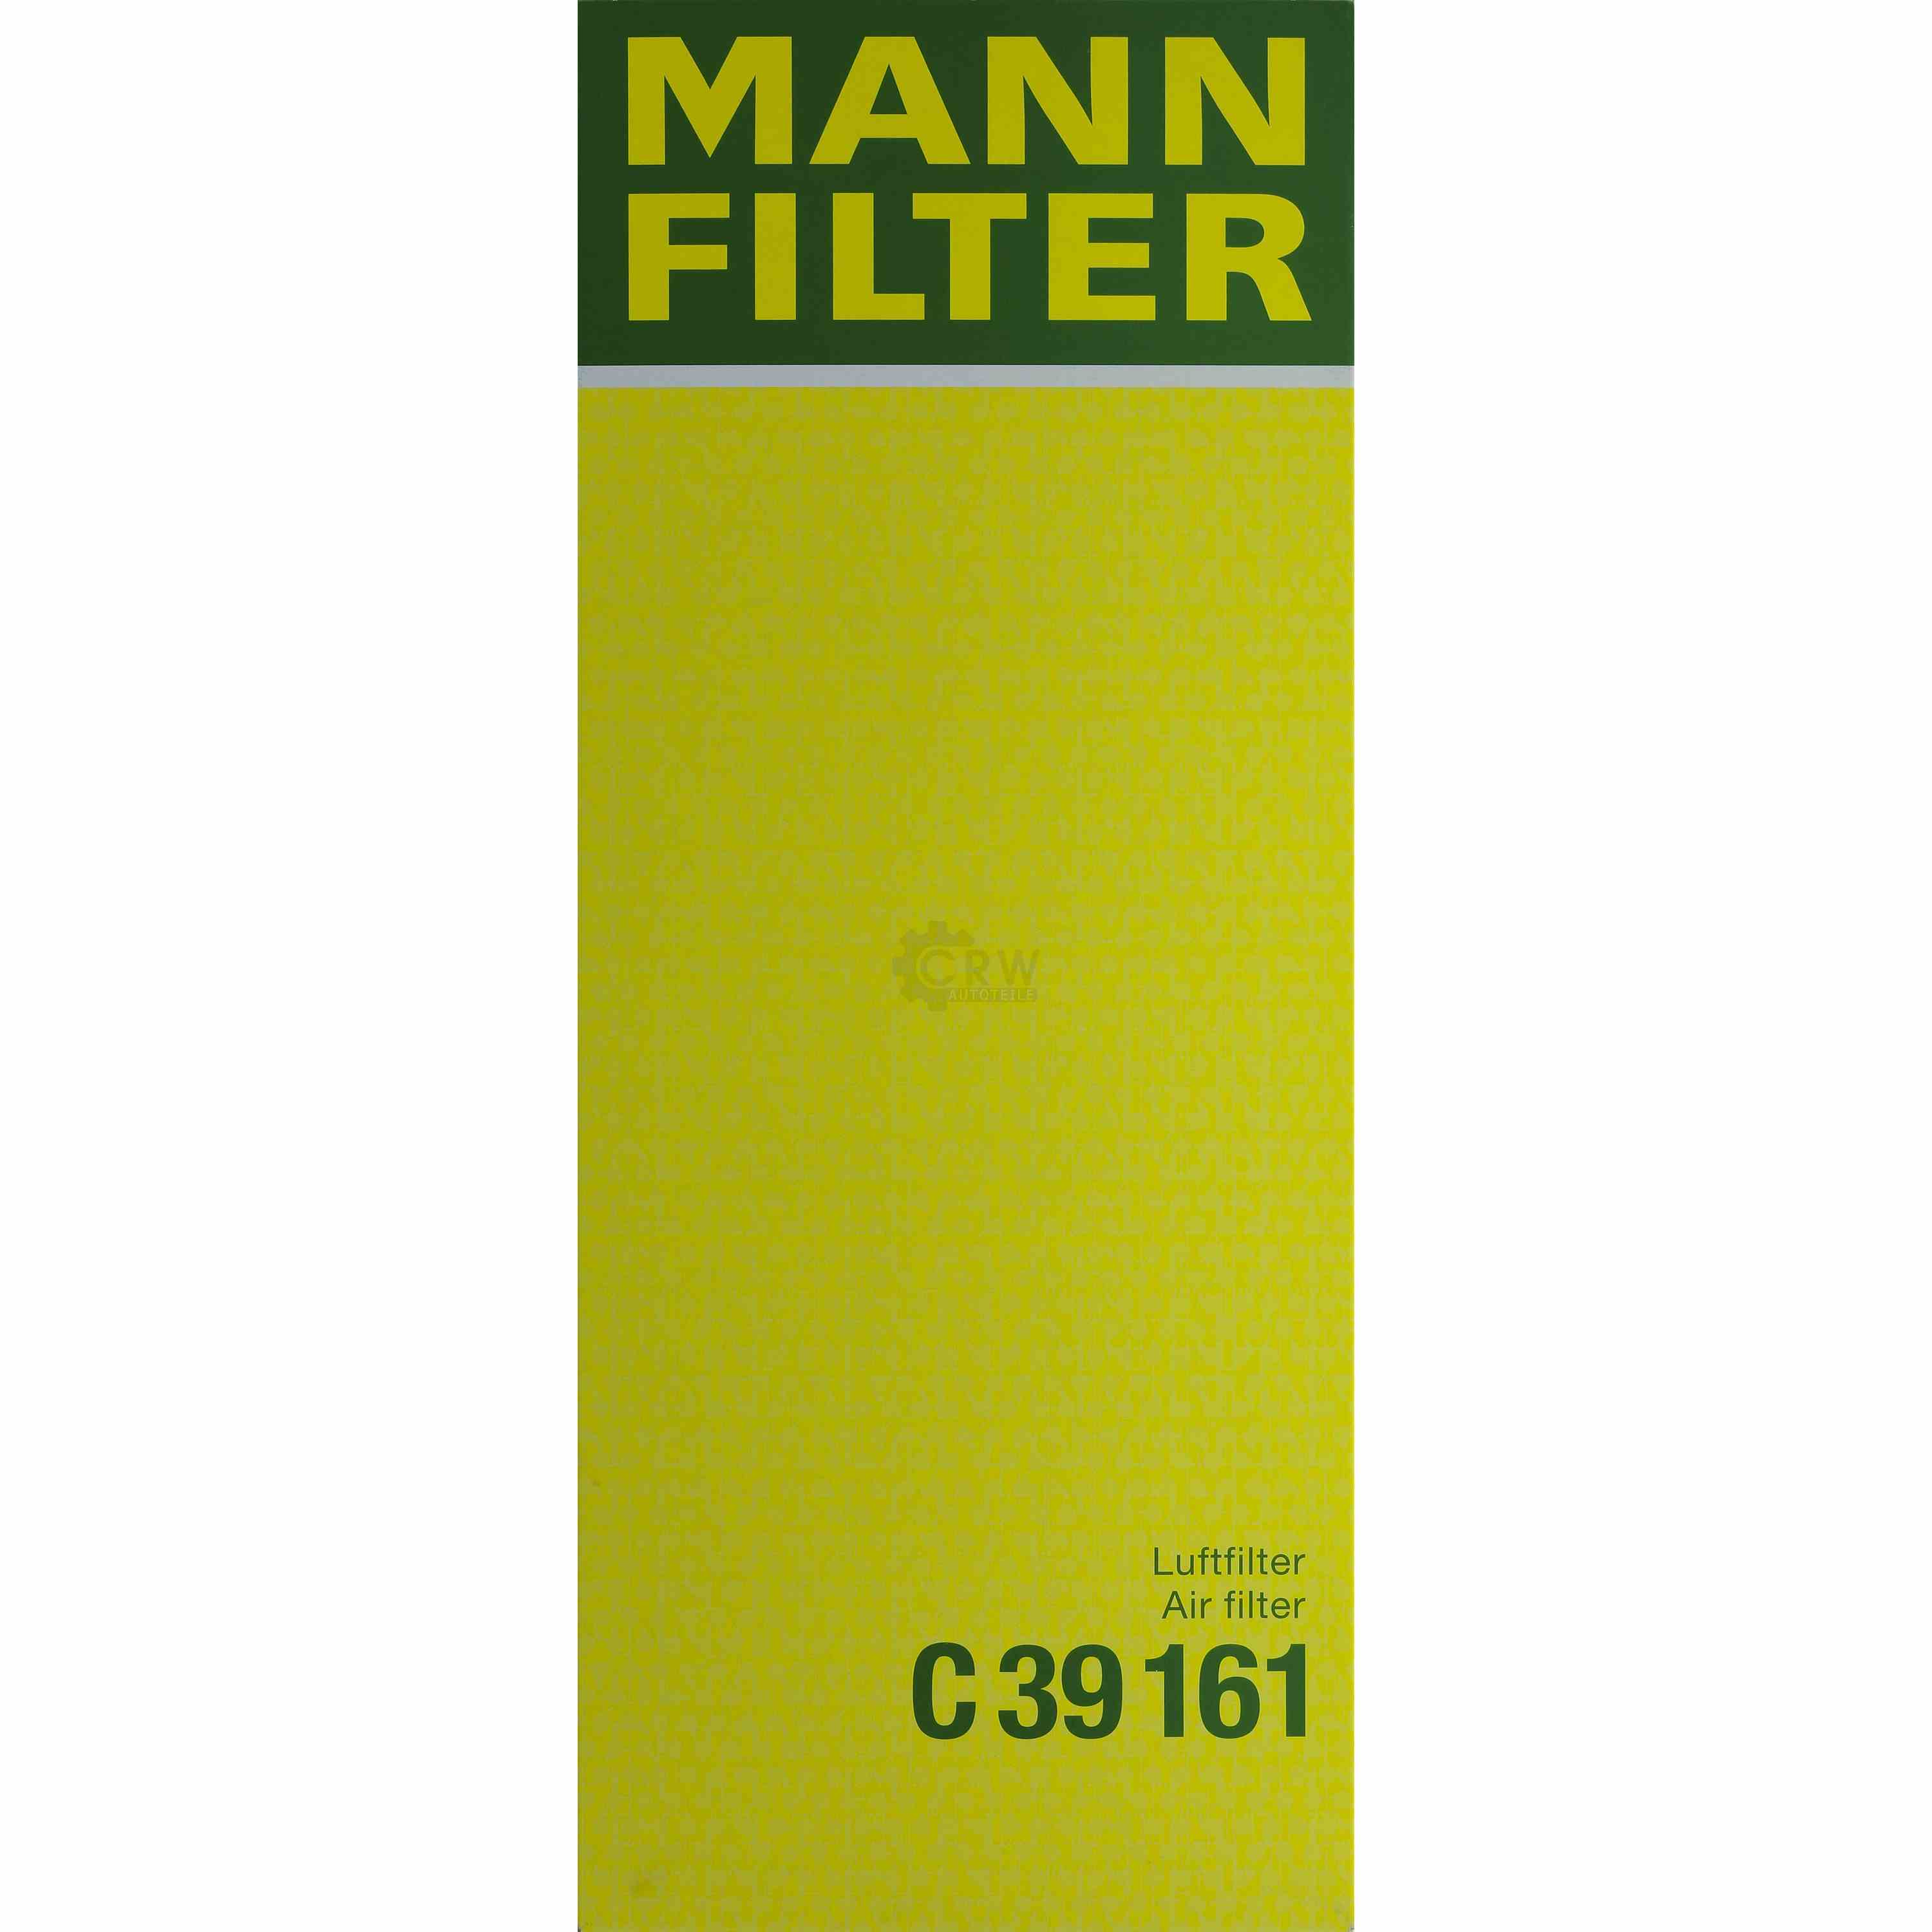 MANN-FILTER Luftfilter für BMW 7er E32 735i iL 730i 5er E34 535i 530i Alpina